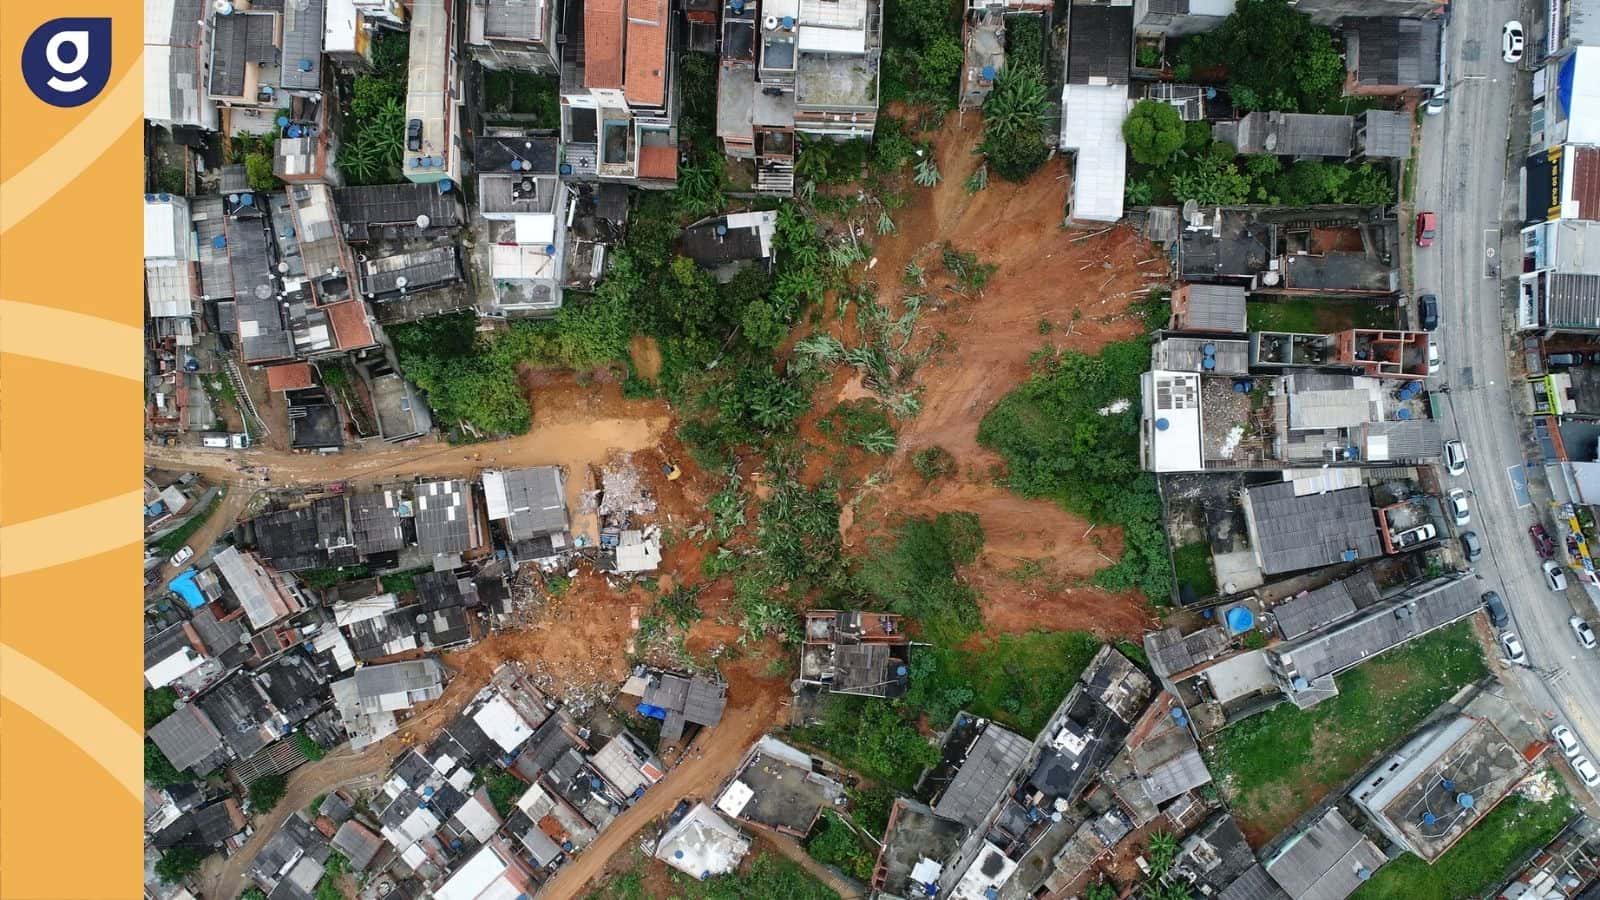 Ligação de eletricidade em assentamentos informais: uma visão urbanística geocracia